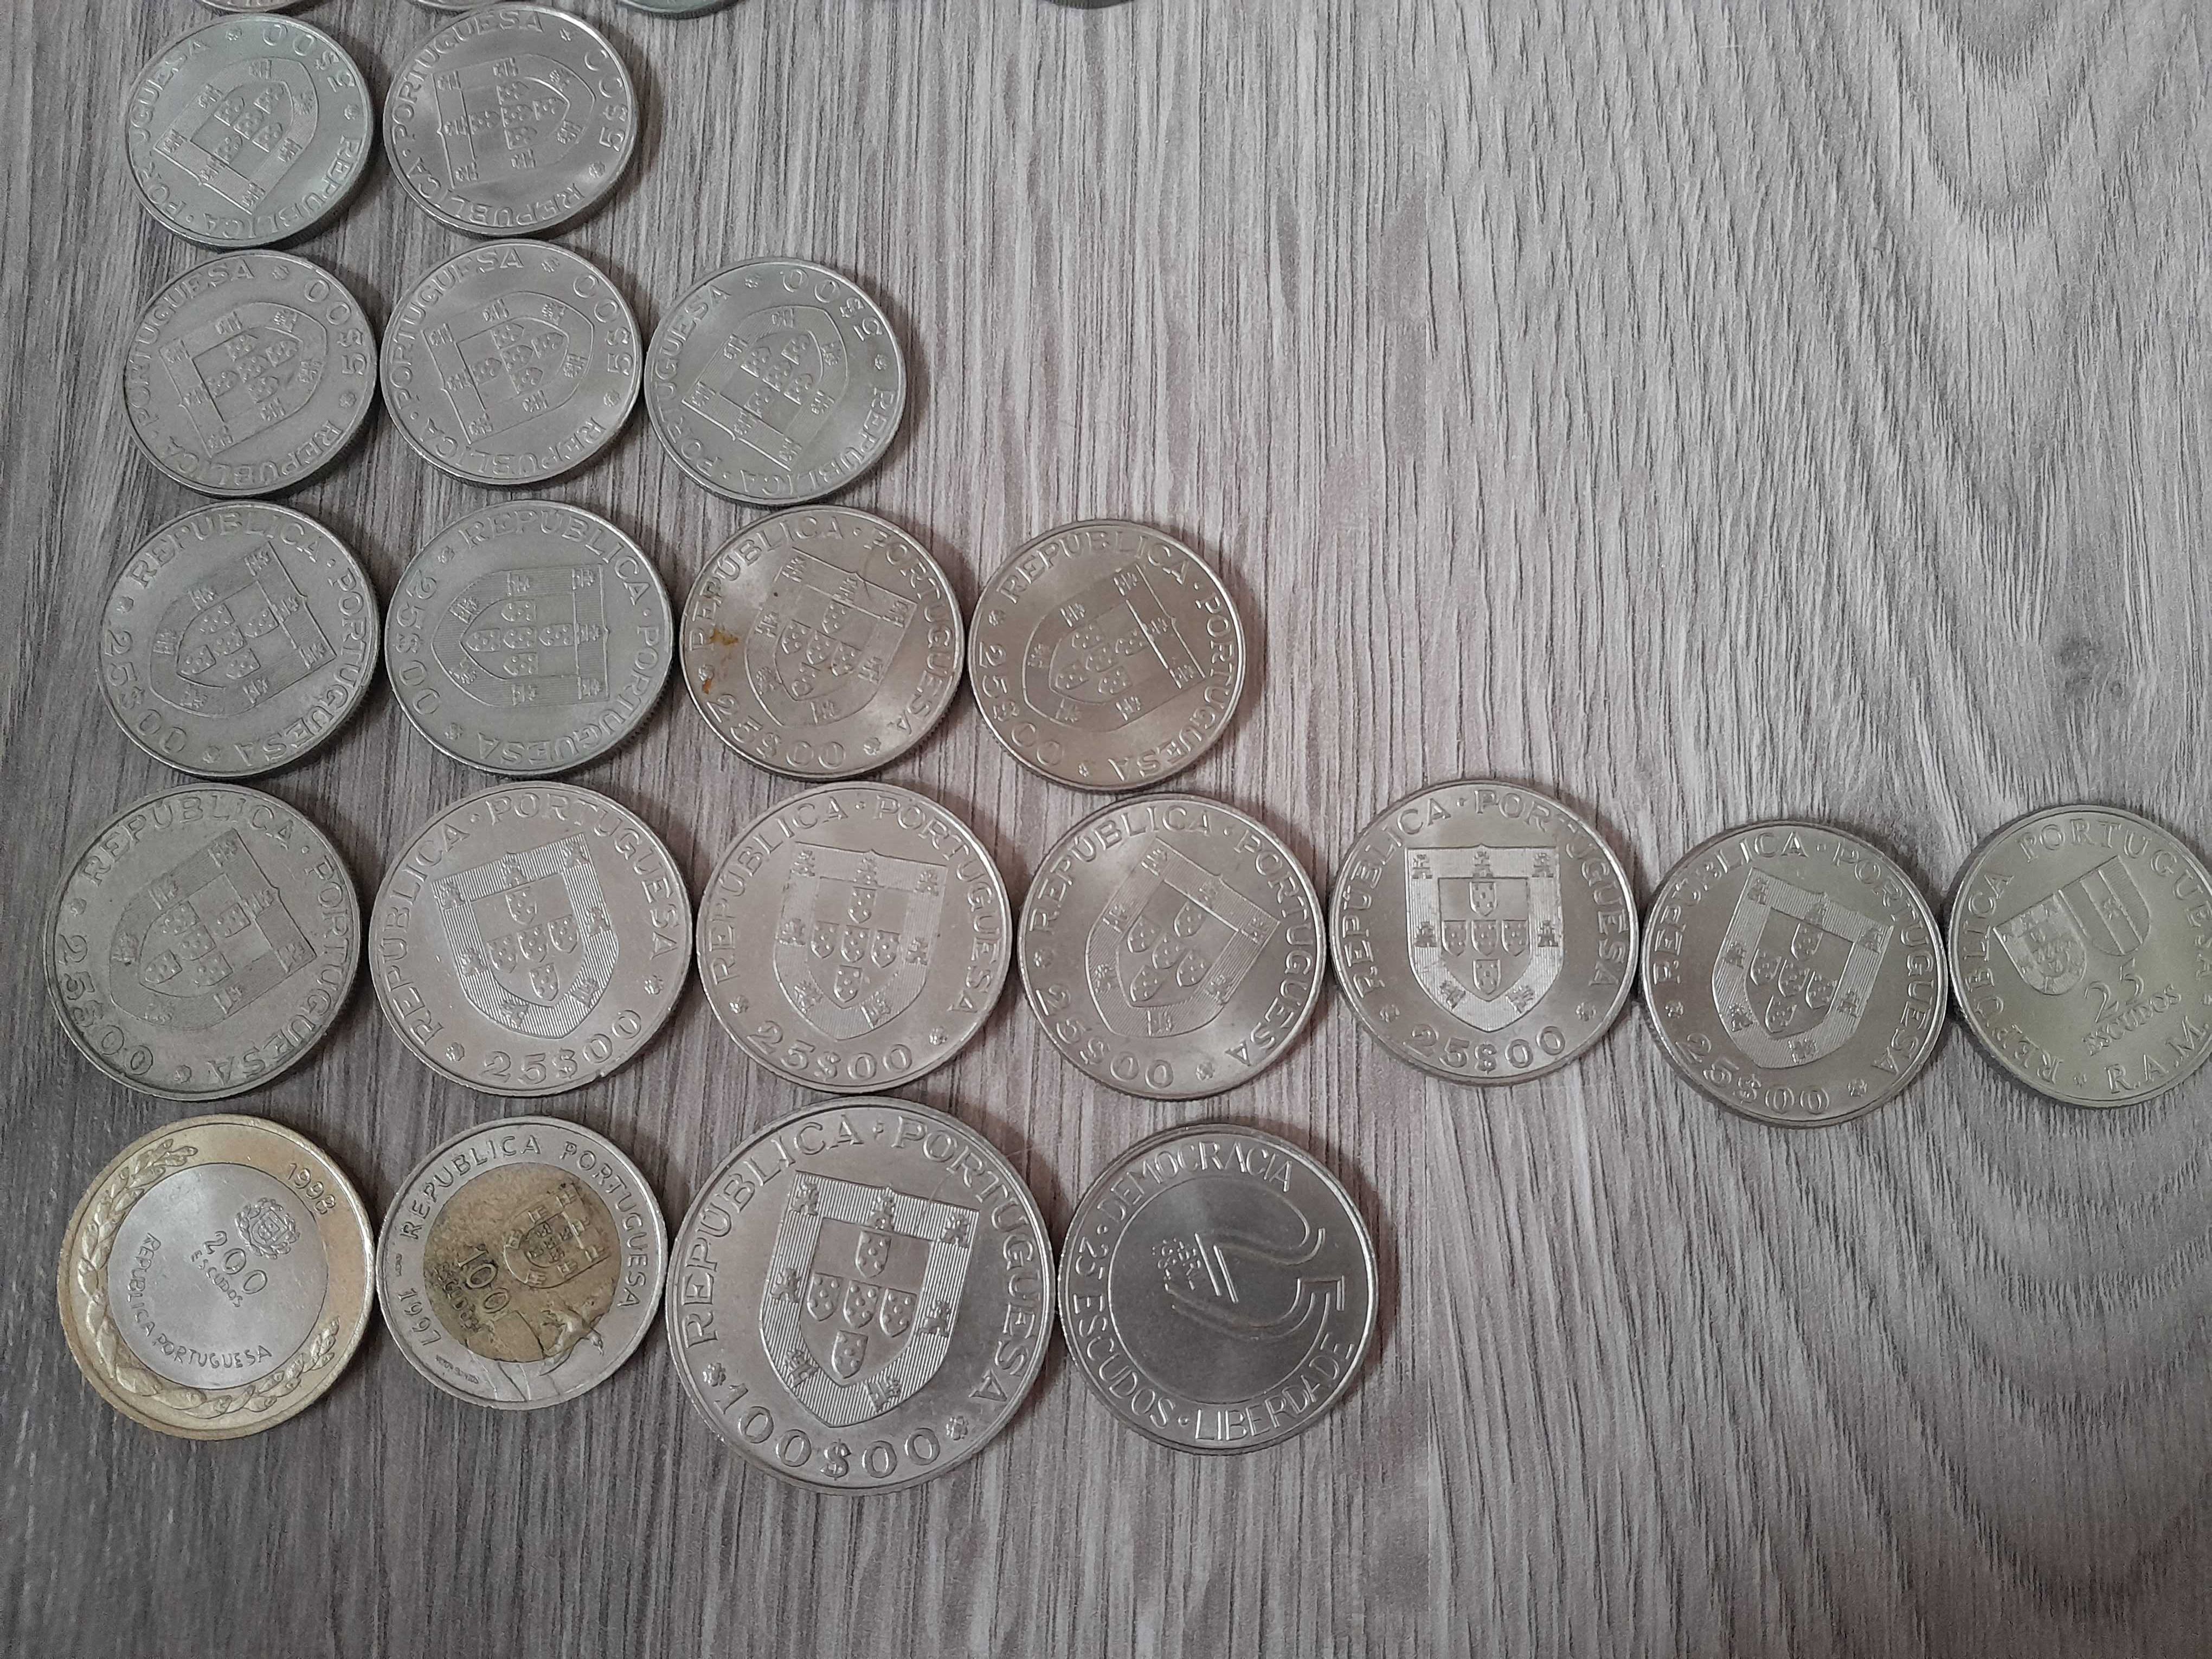 Conjunto de moedas portuguesas comemorativas